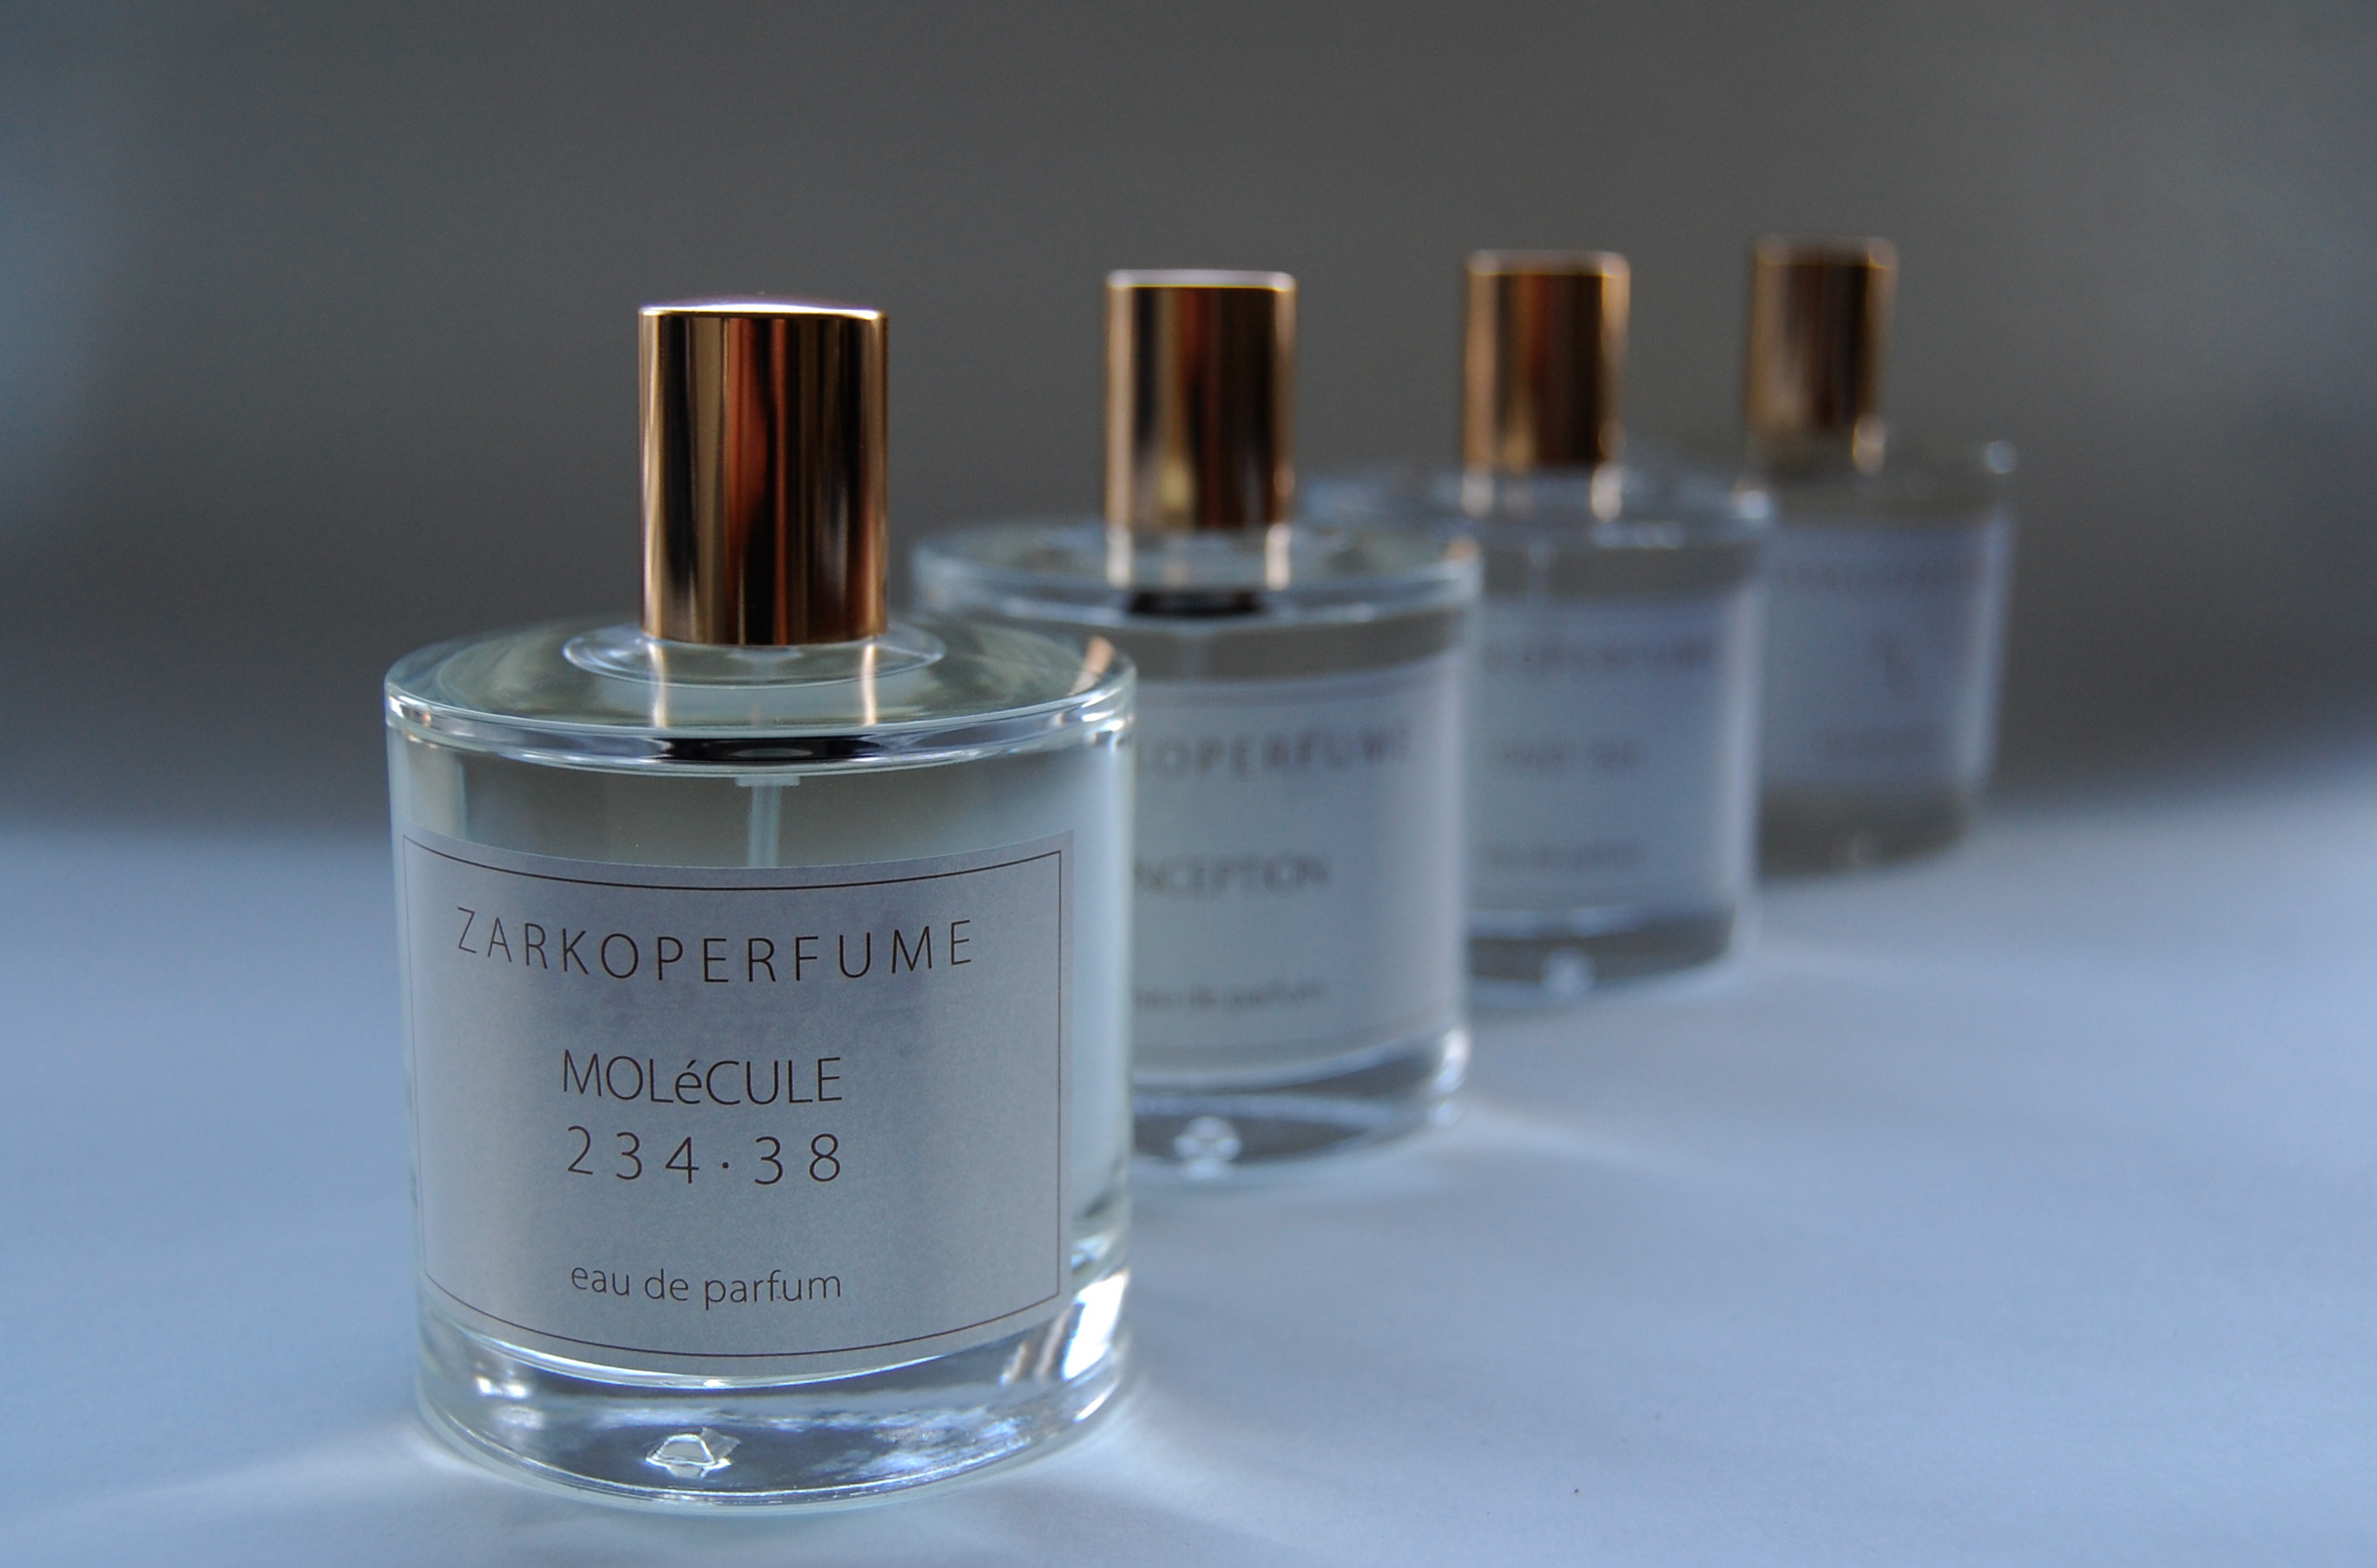 Danska Zarkoperfume lanseras i Sverige under hösten